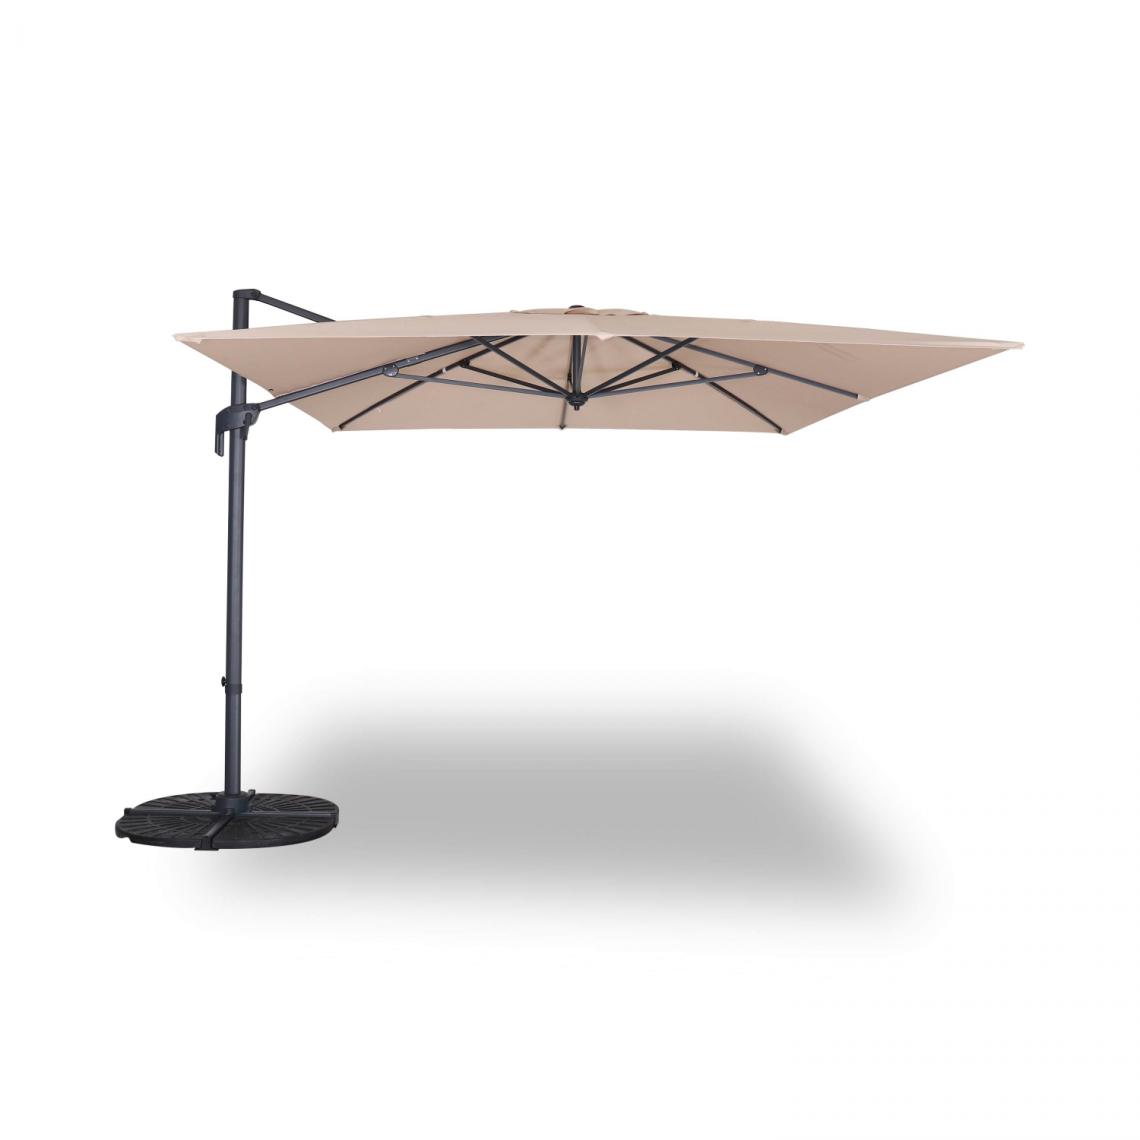 Alice'S Garden - Parasol déporté rectangulaire 3 x 4 m – Antibes – beige – parasol exporté, inclinable, rabattable et rotatif à 360° - Parasols